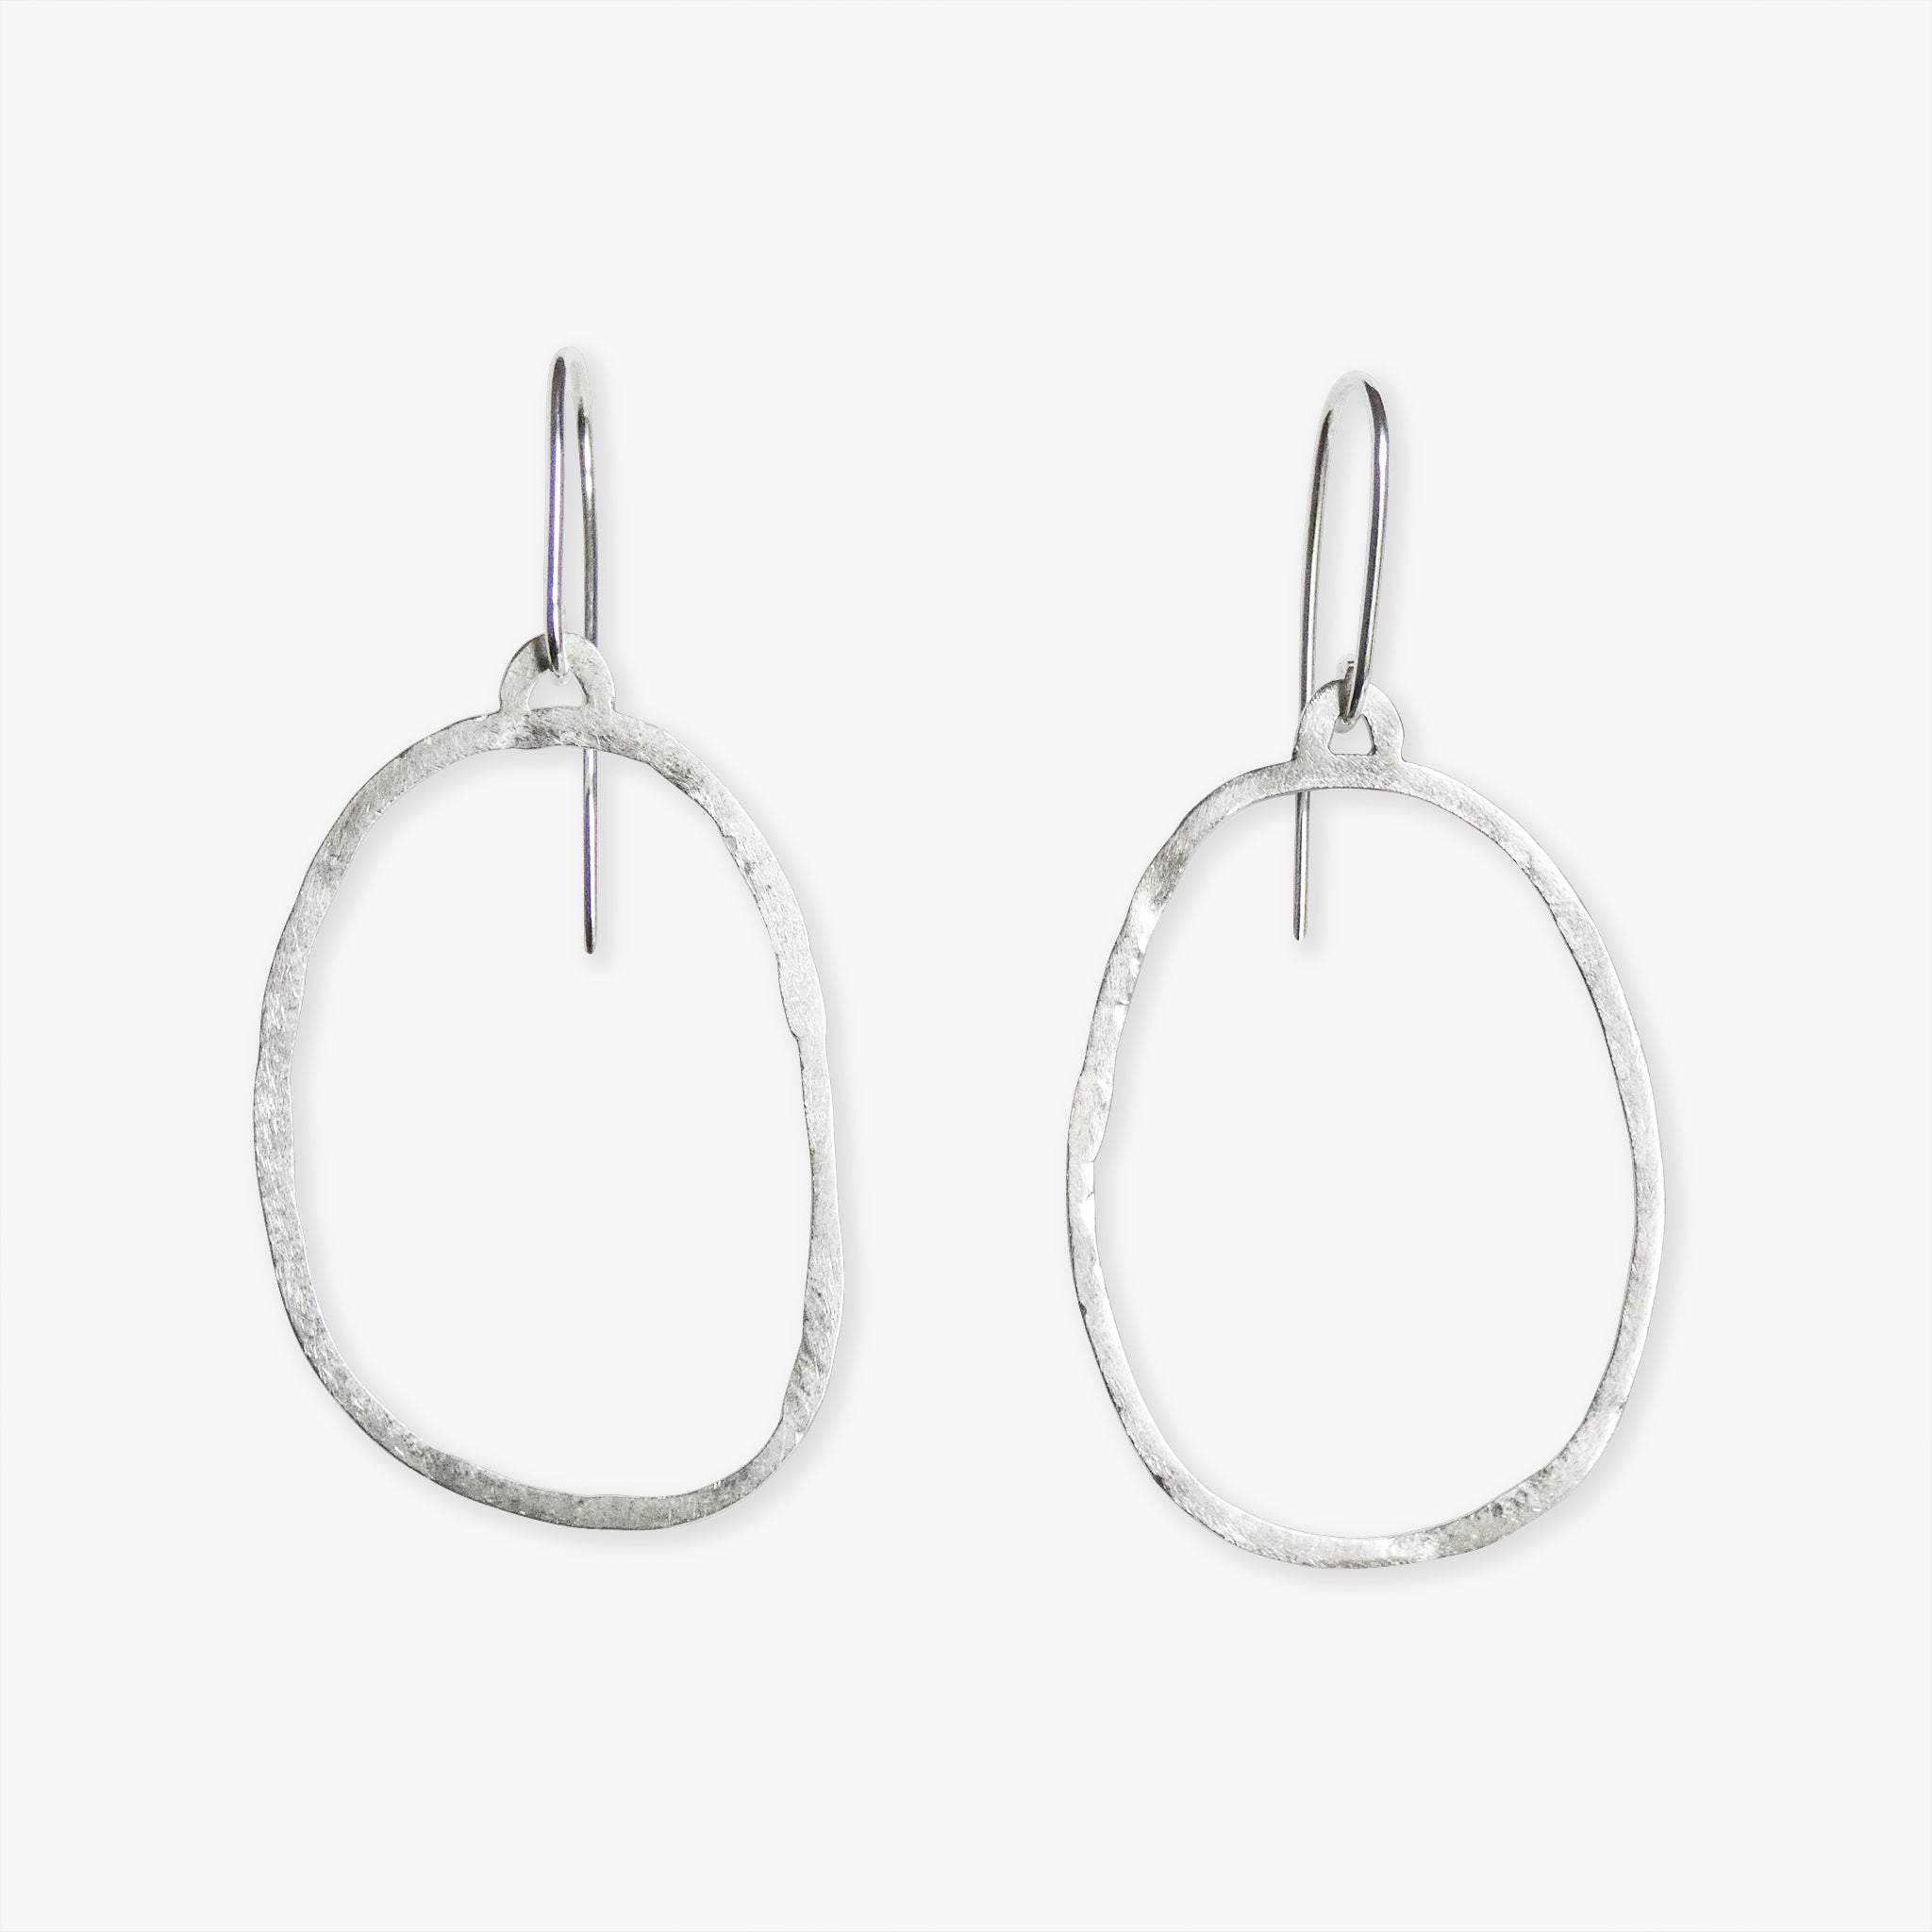 borɔferɛ recycled silver drop earrings